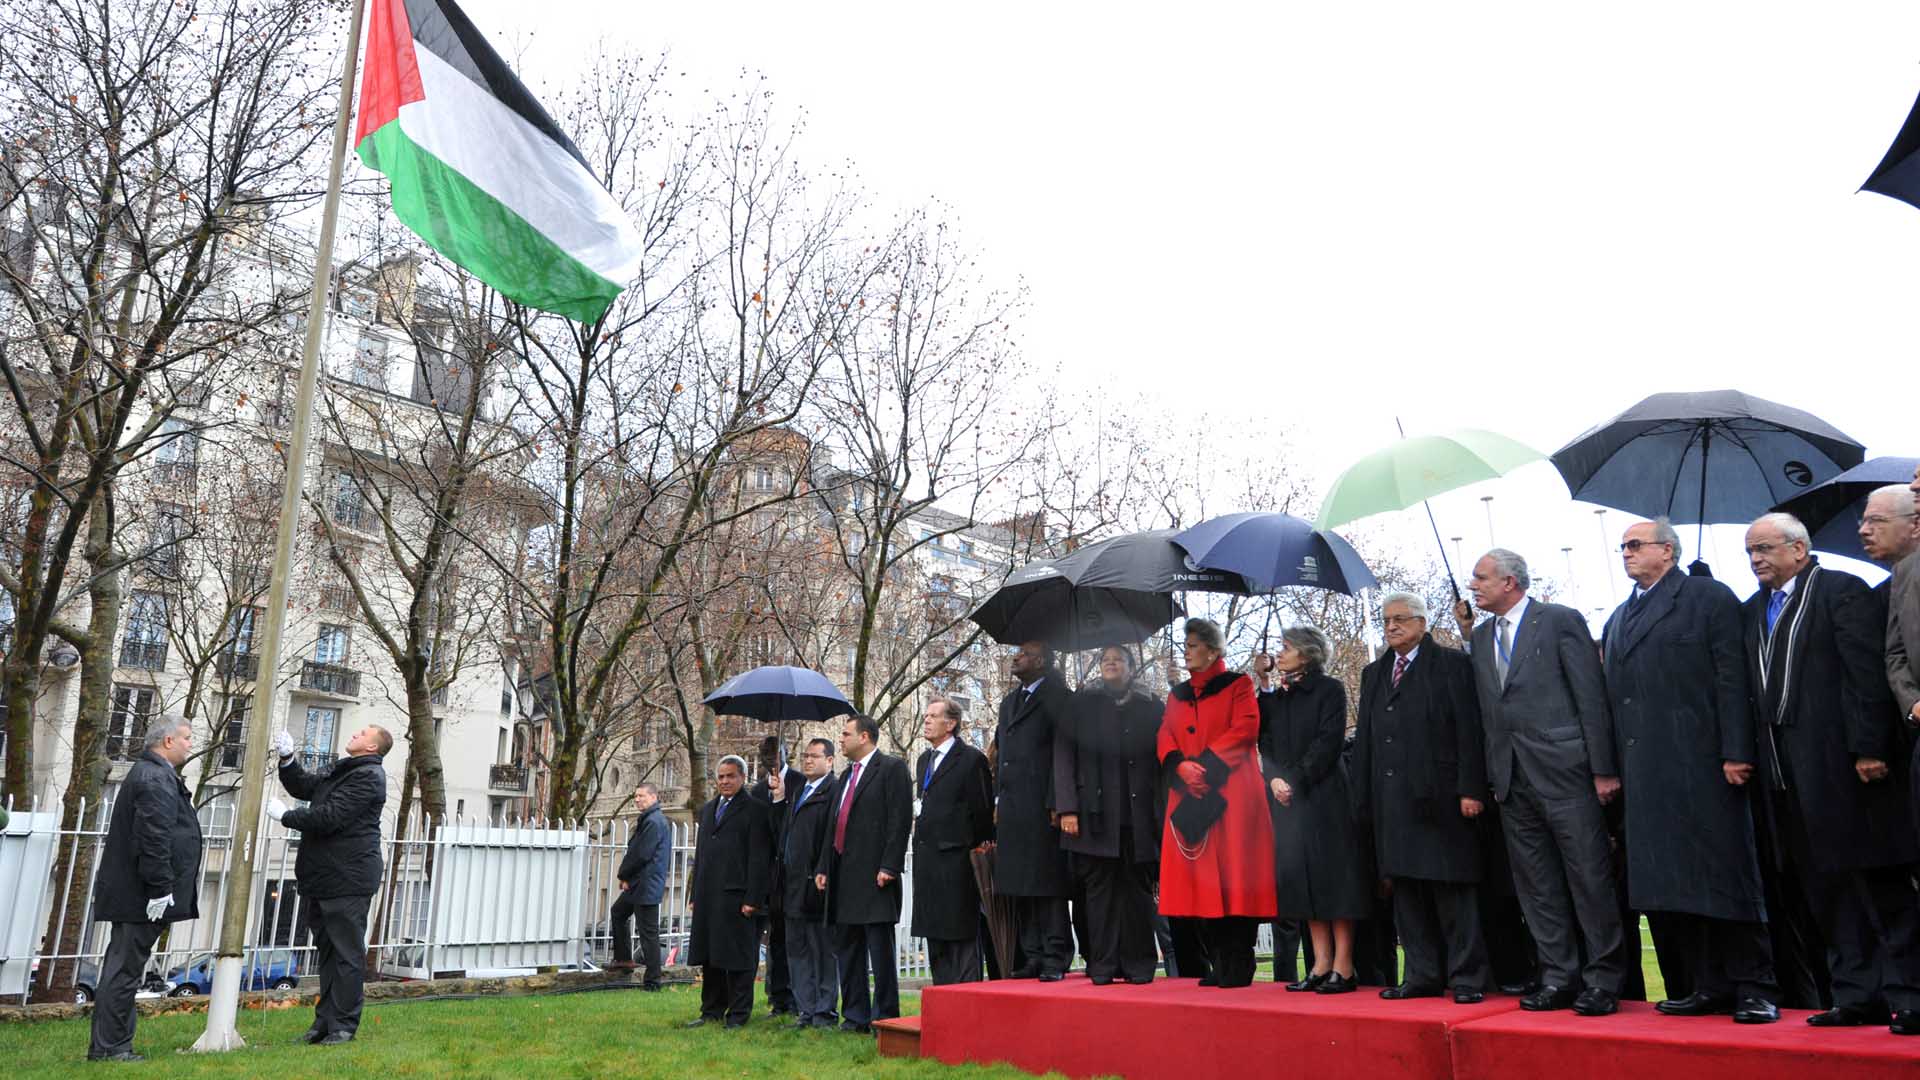 Einschneidendes Datum: Mit einer Zeremonie feierte die UNESCO am 13. Dezember 2011 in Paris die Aufnahme „Palästinas“ als Mitgliedstaat